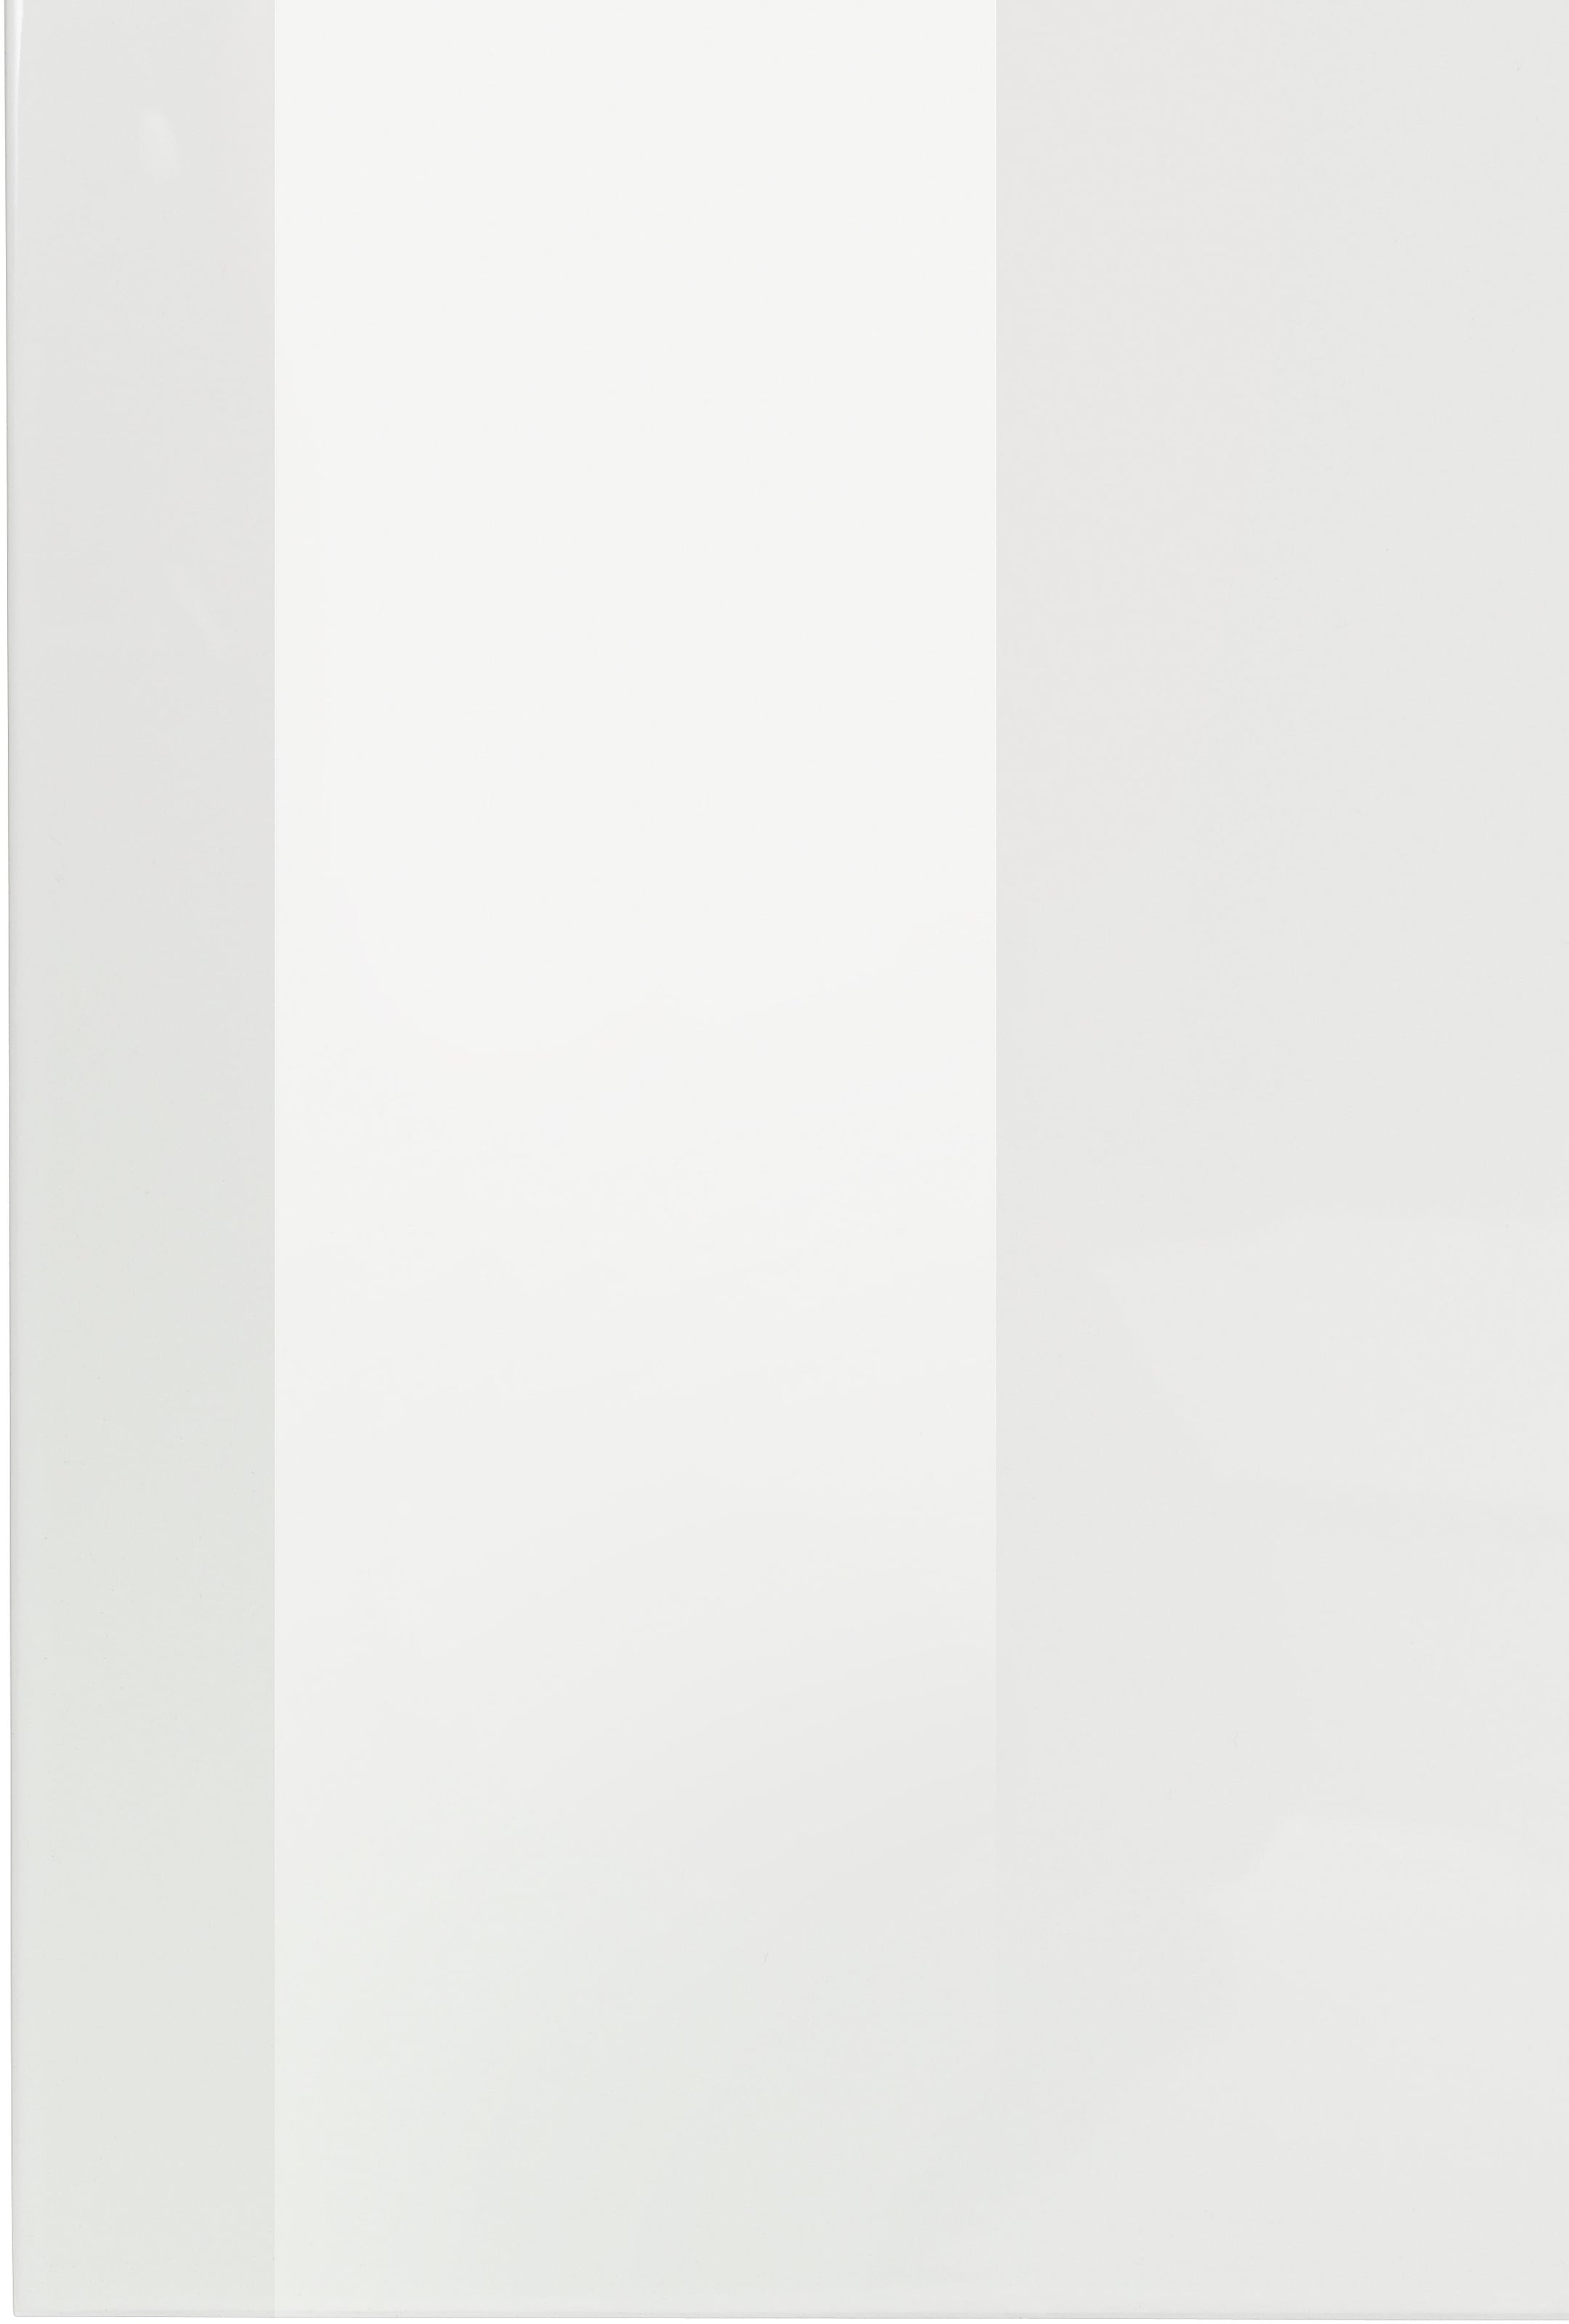 INOSIGN Sideboard »Magic, Kommode, Schrank, Büffet, Kredenz«, mit 2 Türen und 3 Schubkästen Weiß HG (B/T/H) 240x40x80 cm